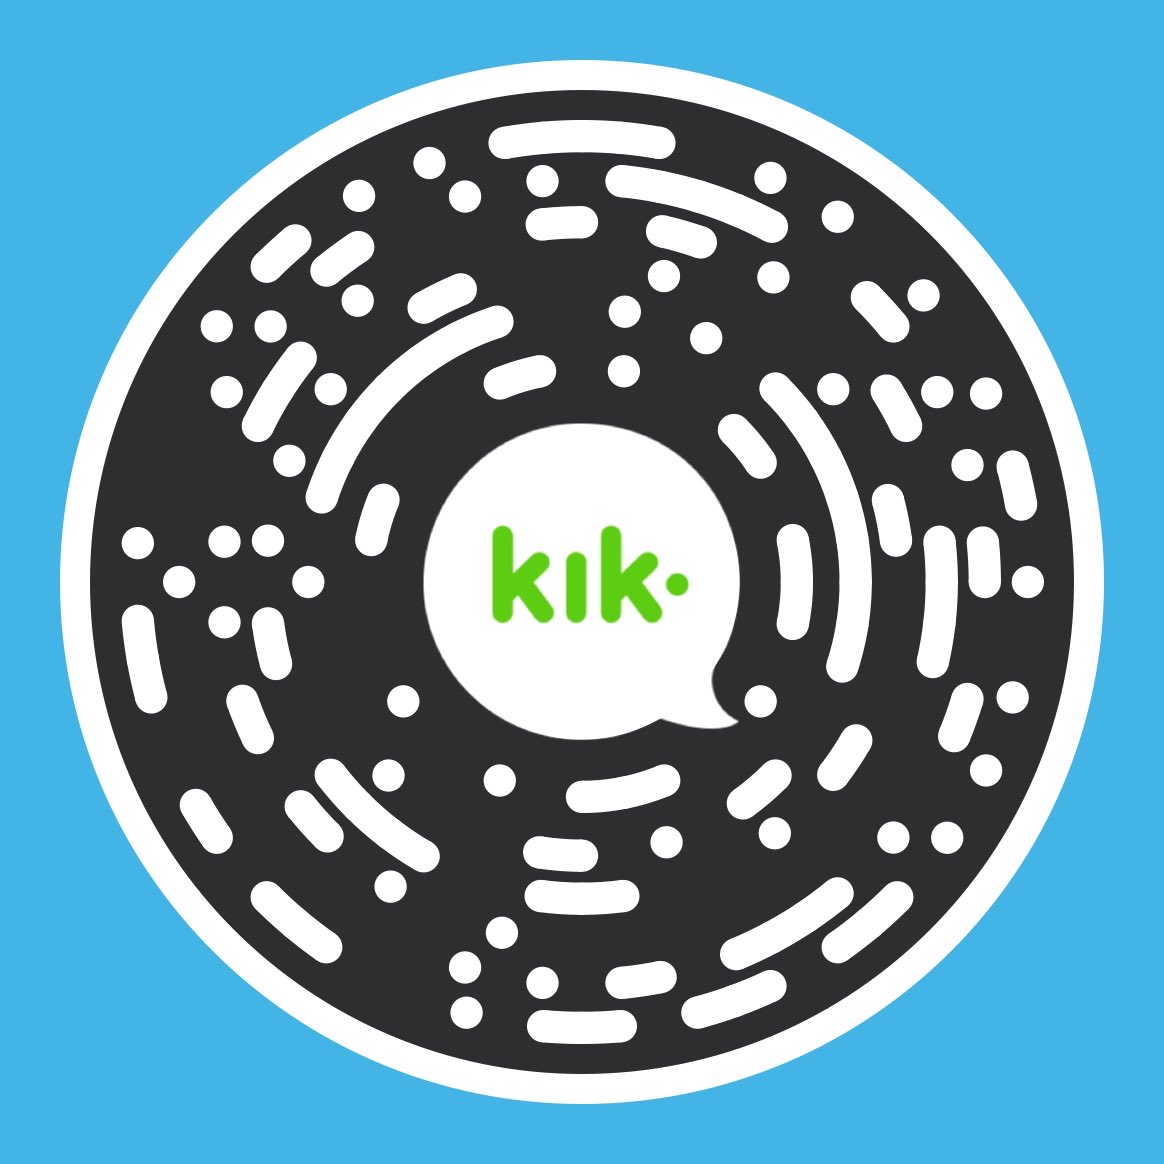 Scan my #kikcode to chat with me. My username is 'arch.samer' kik.me/arch.samer #kik #kikme